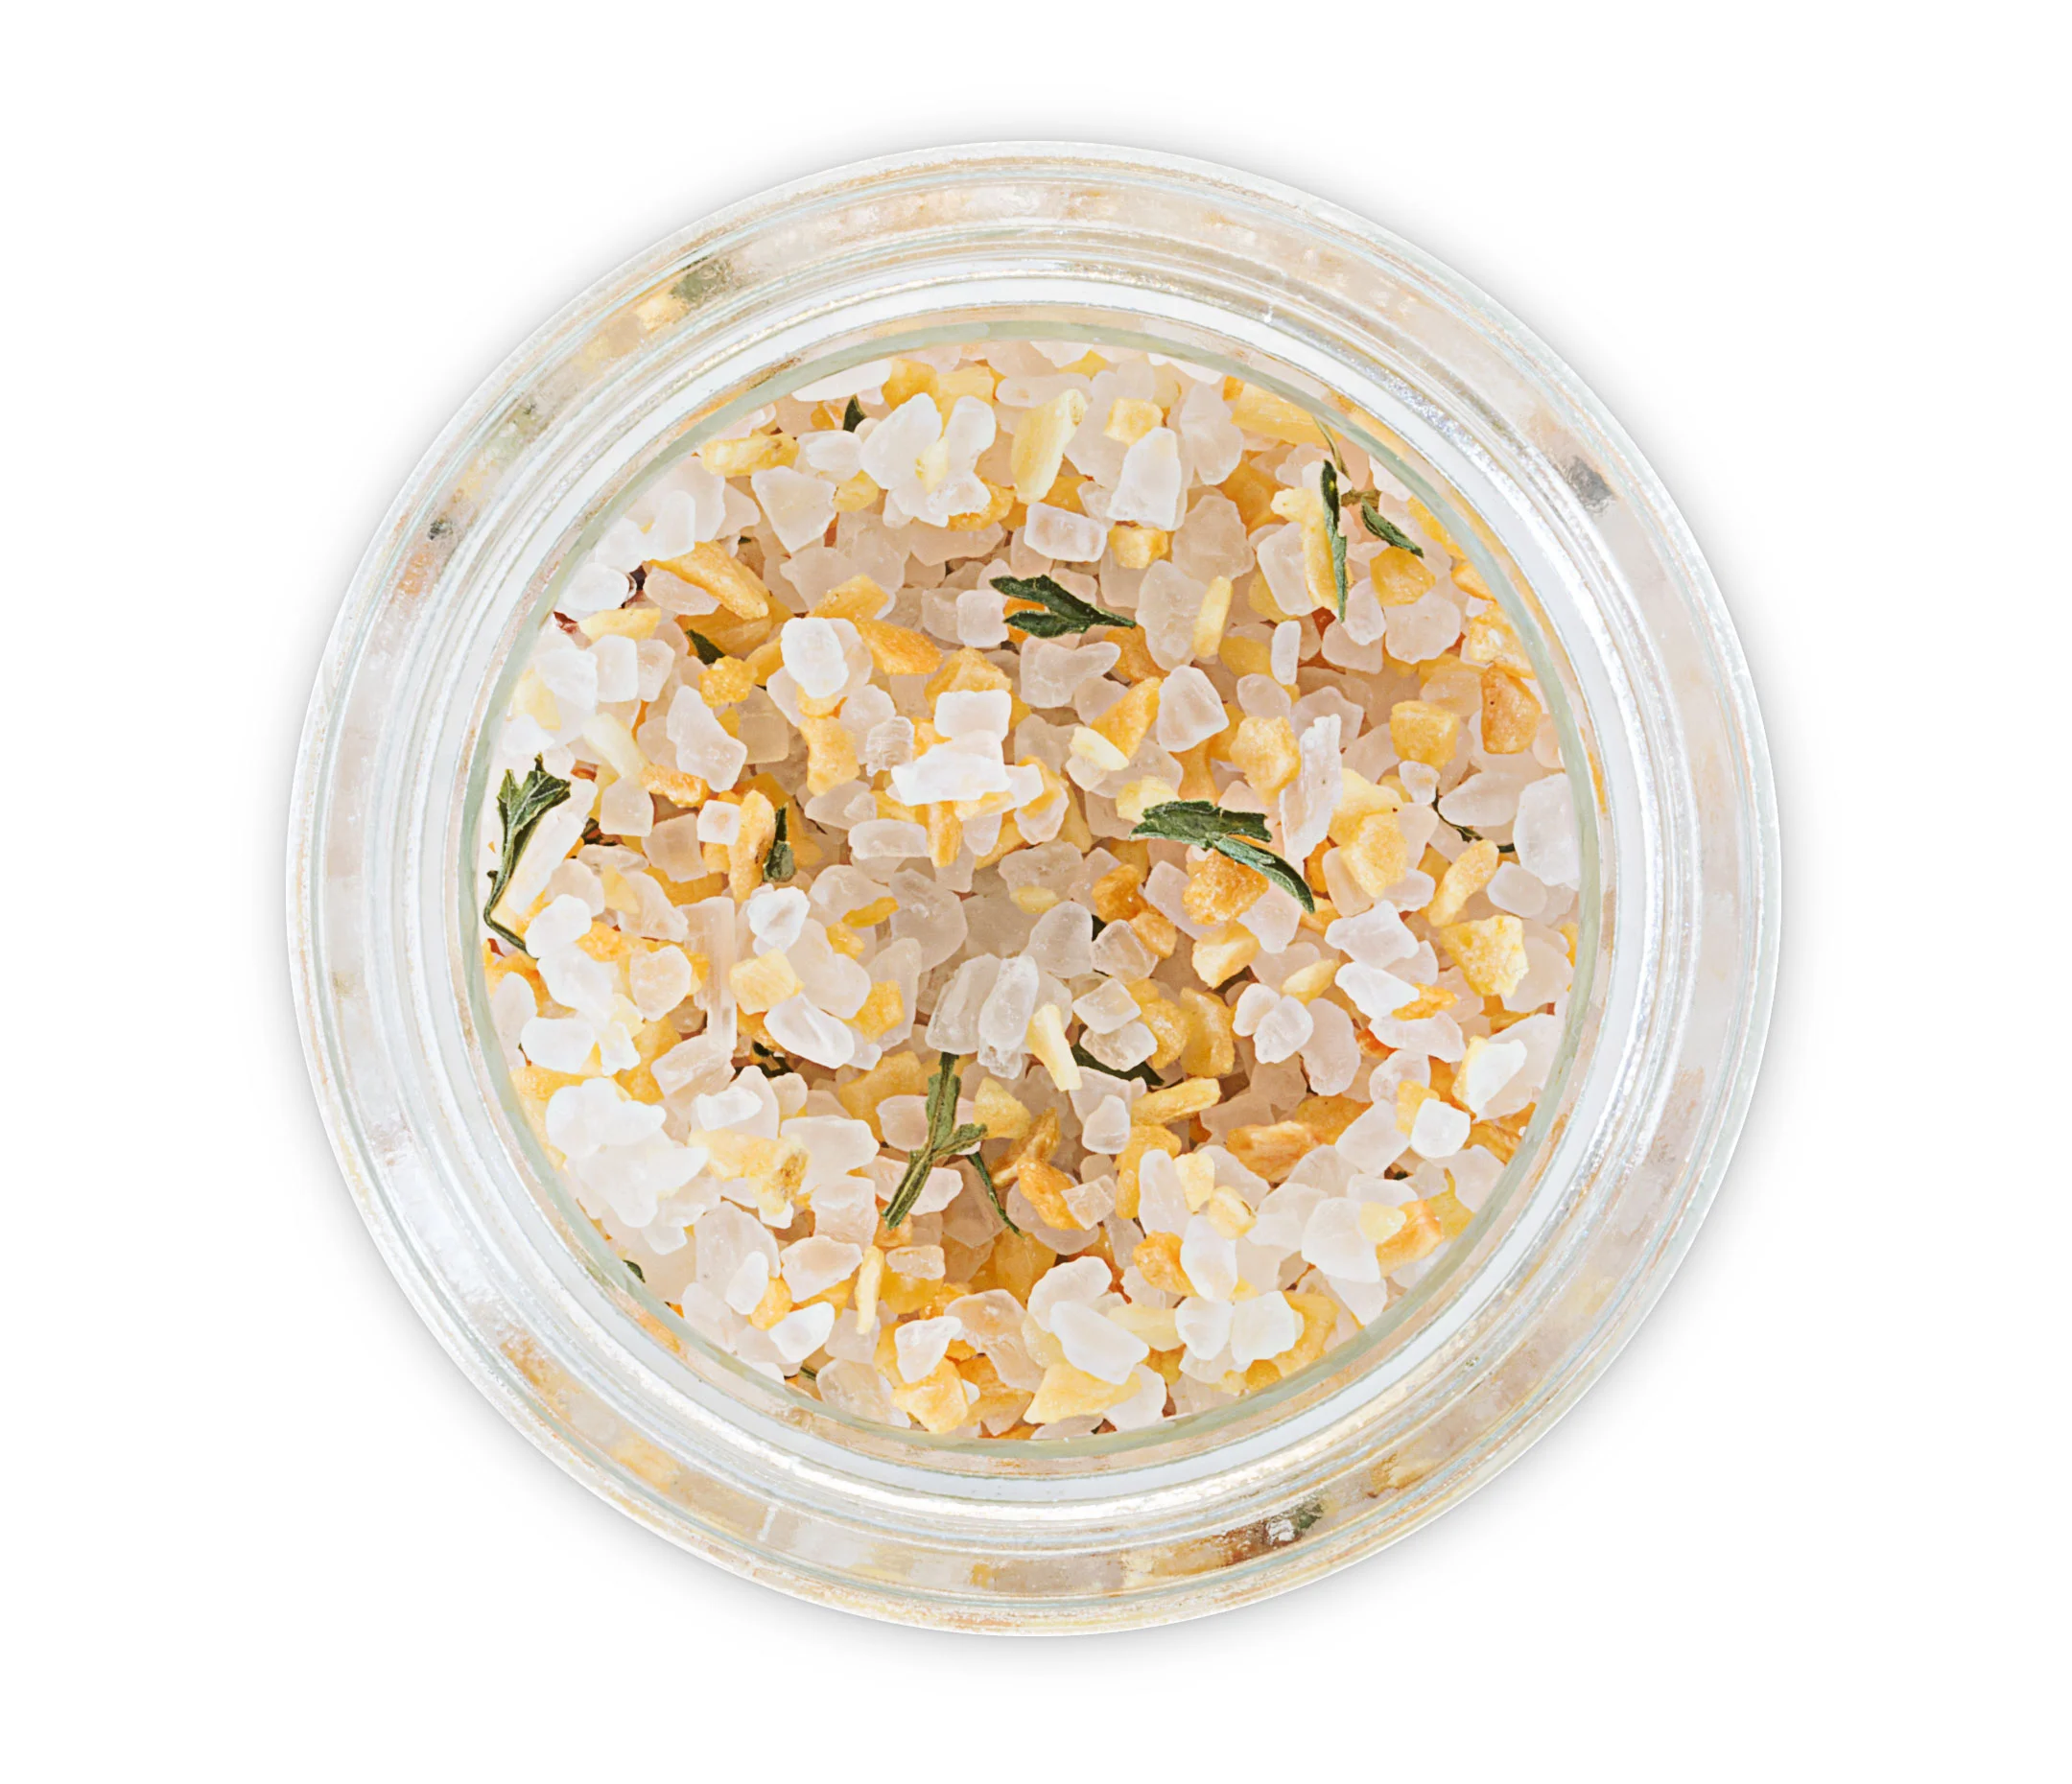 Herbed Garlic Sea Salt Blend (Grinder)